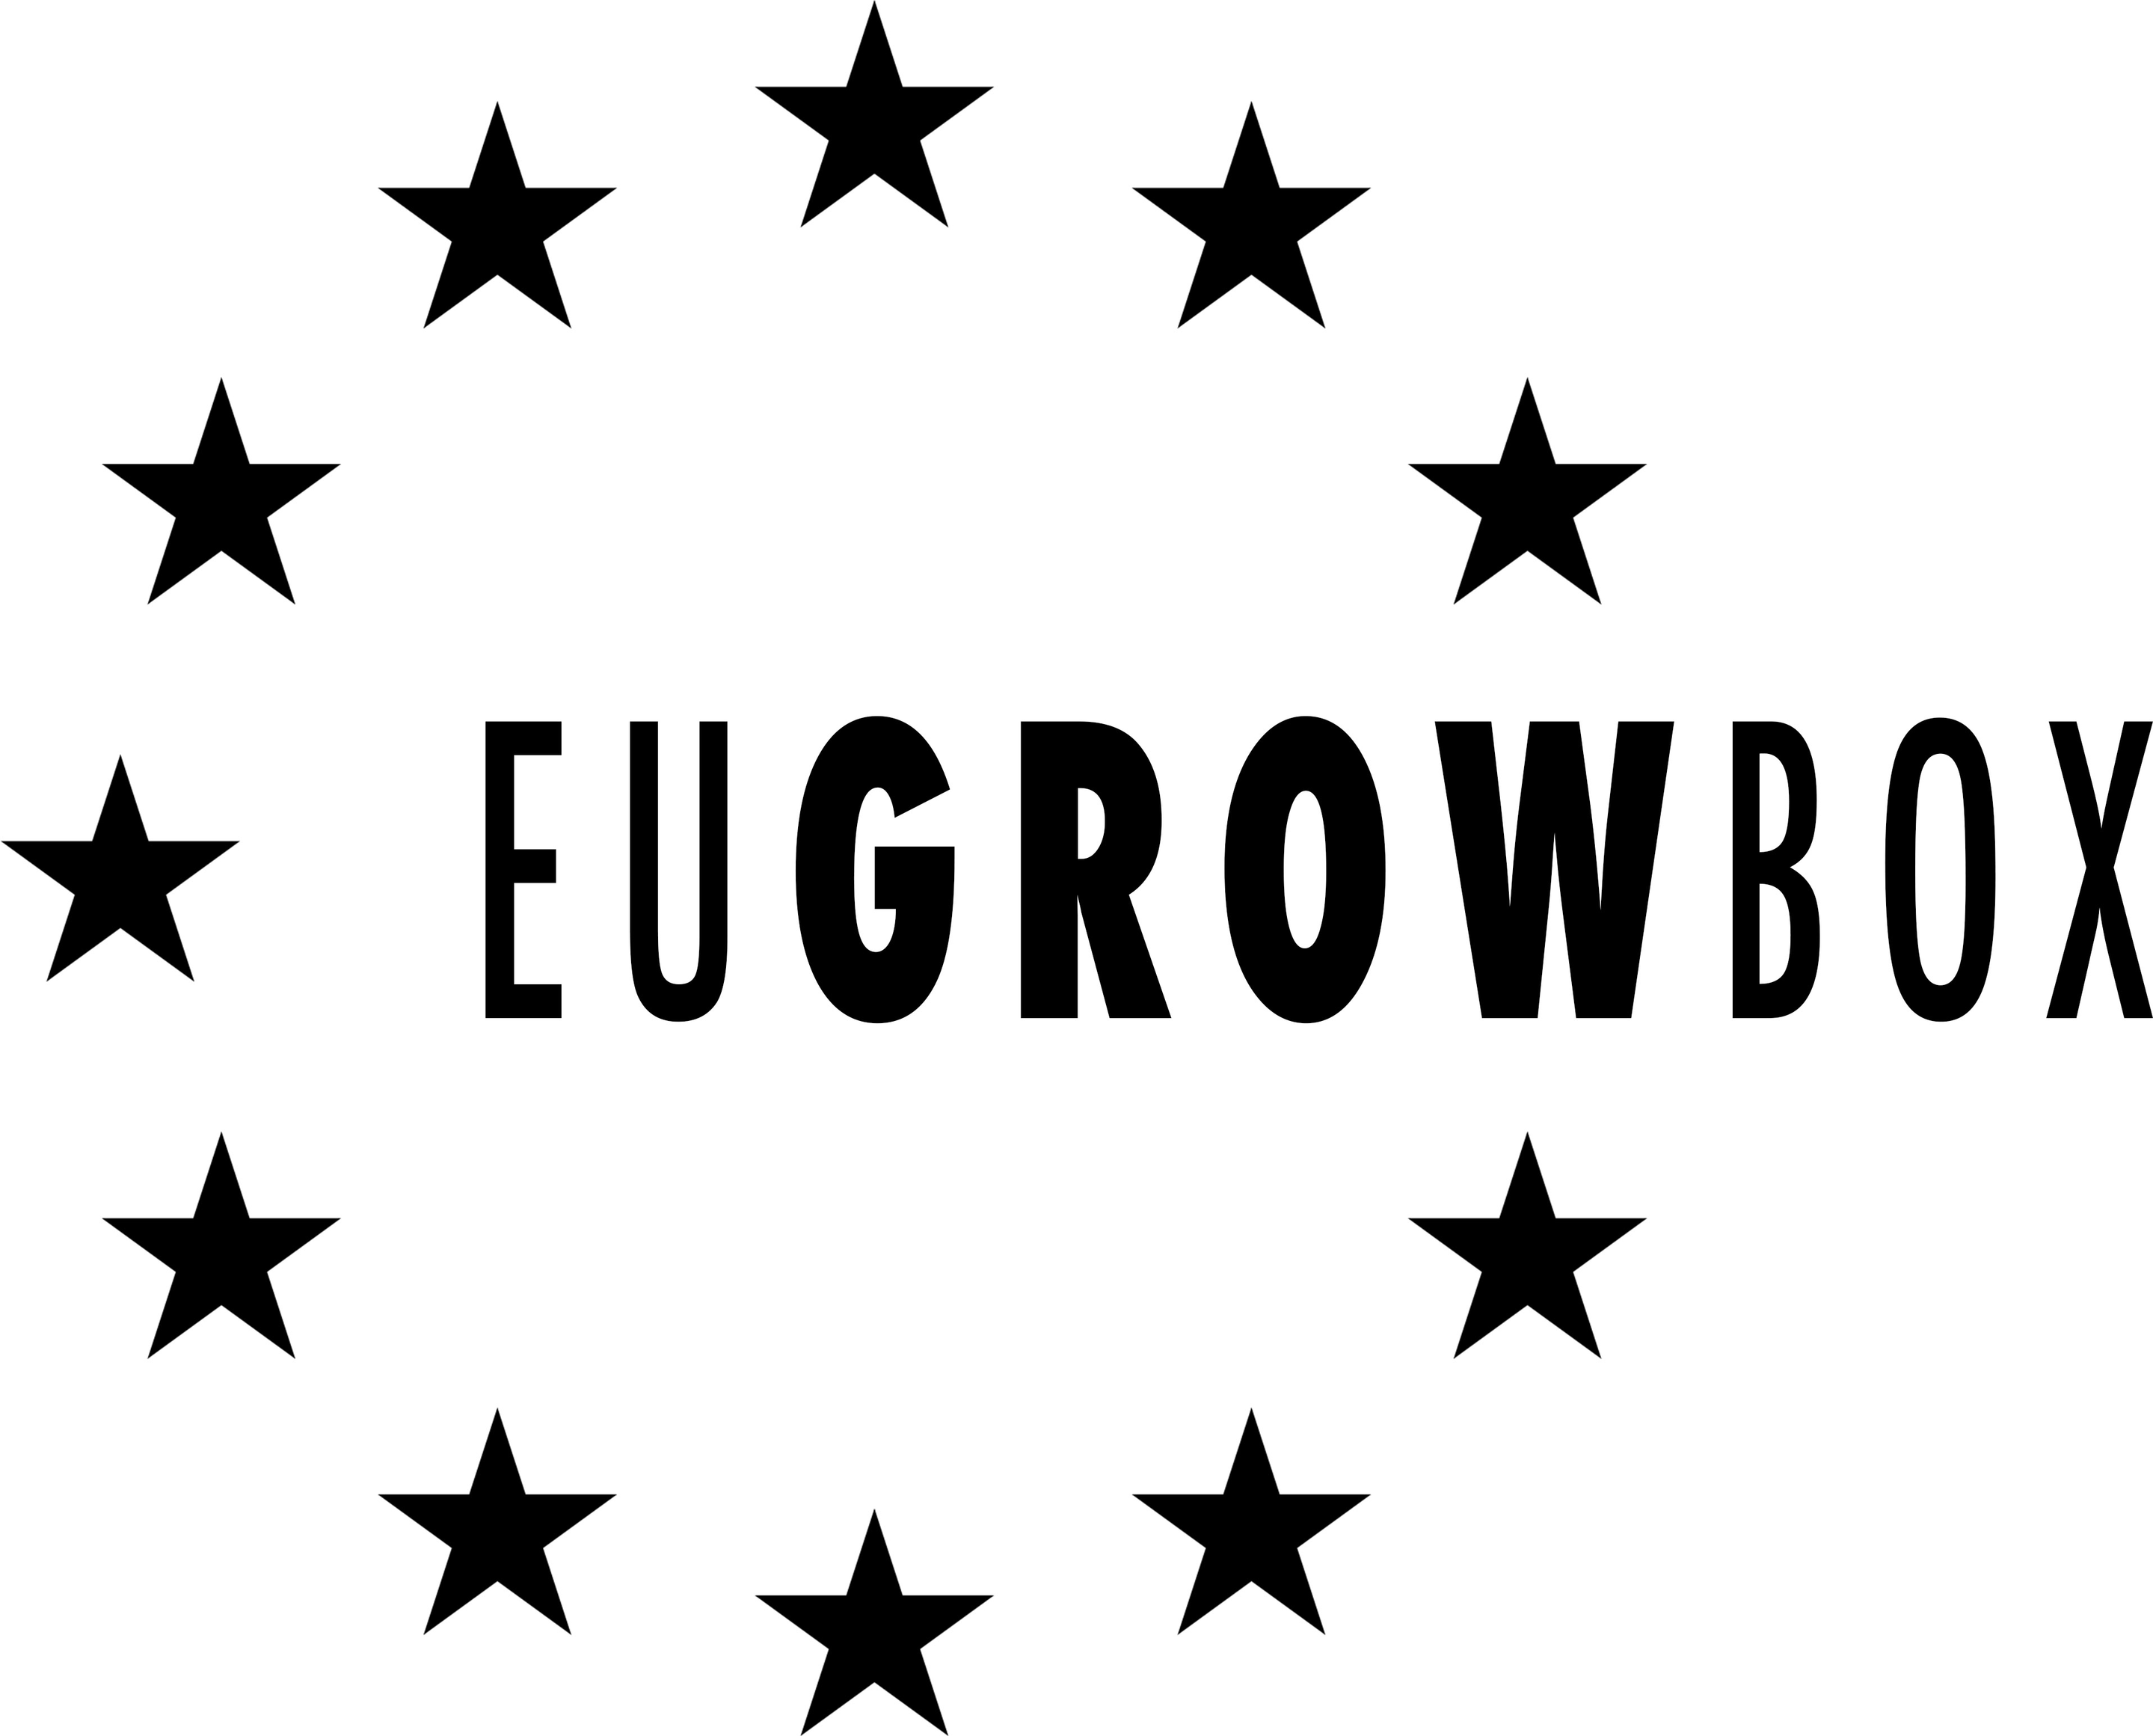 EU GROW BOX